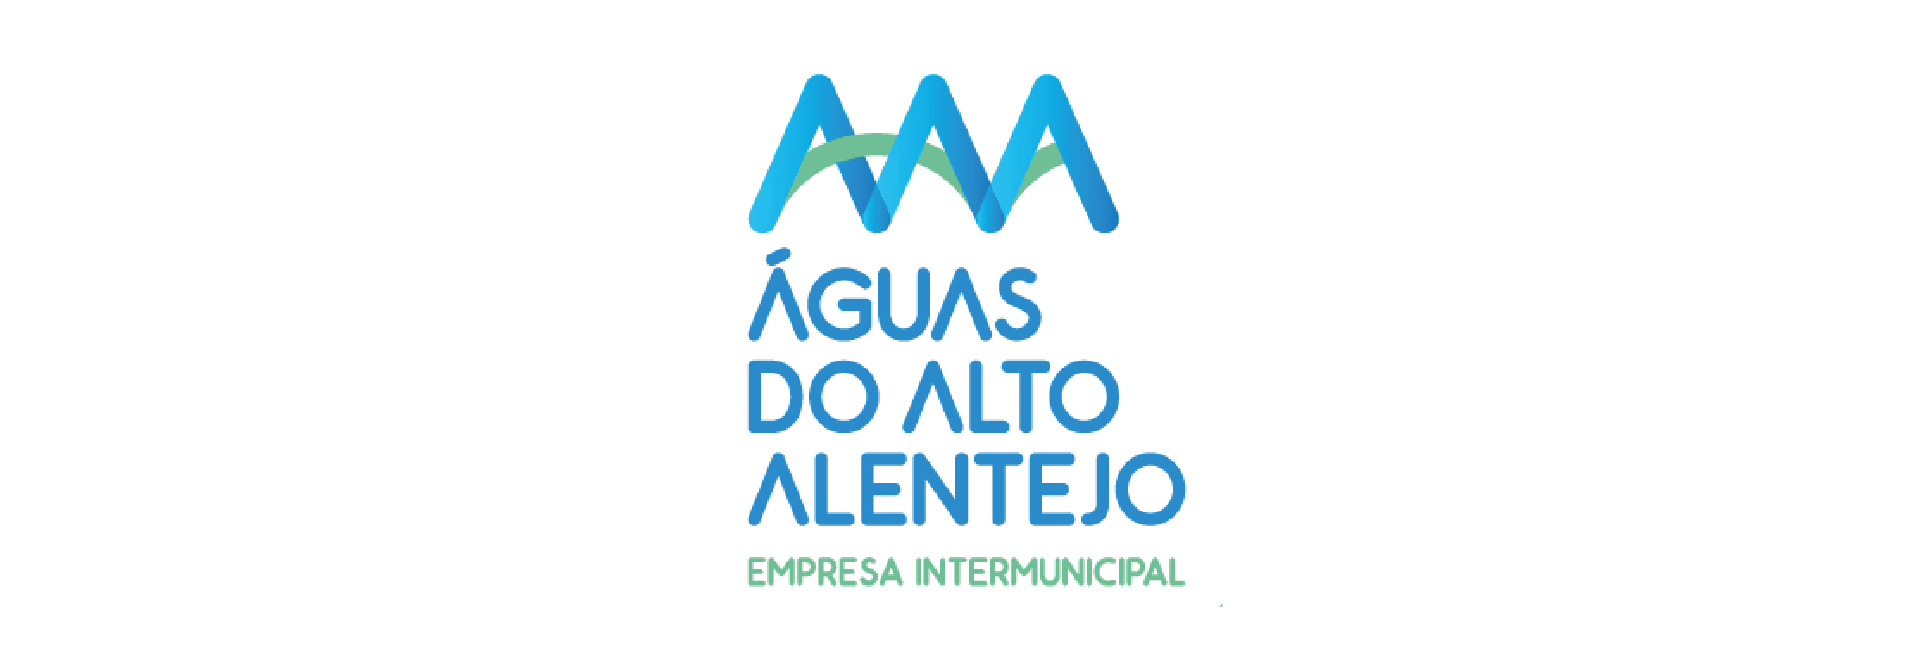 (Português) Águas do Alto Alentejo assume gestão do abastecimento de águas.